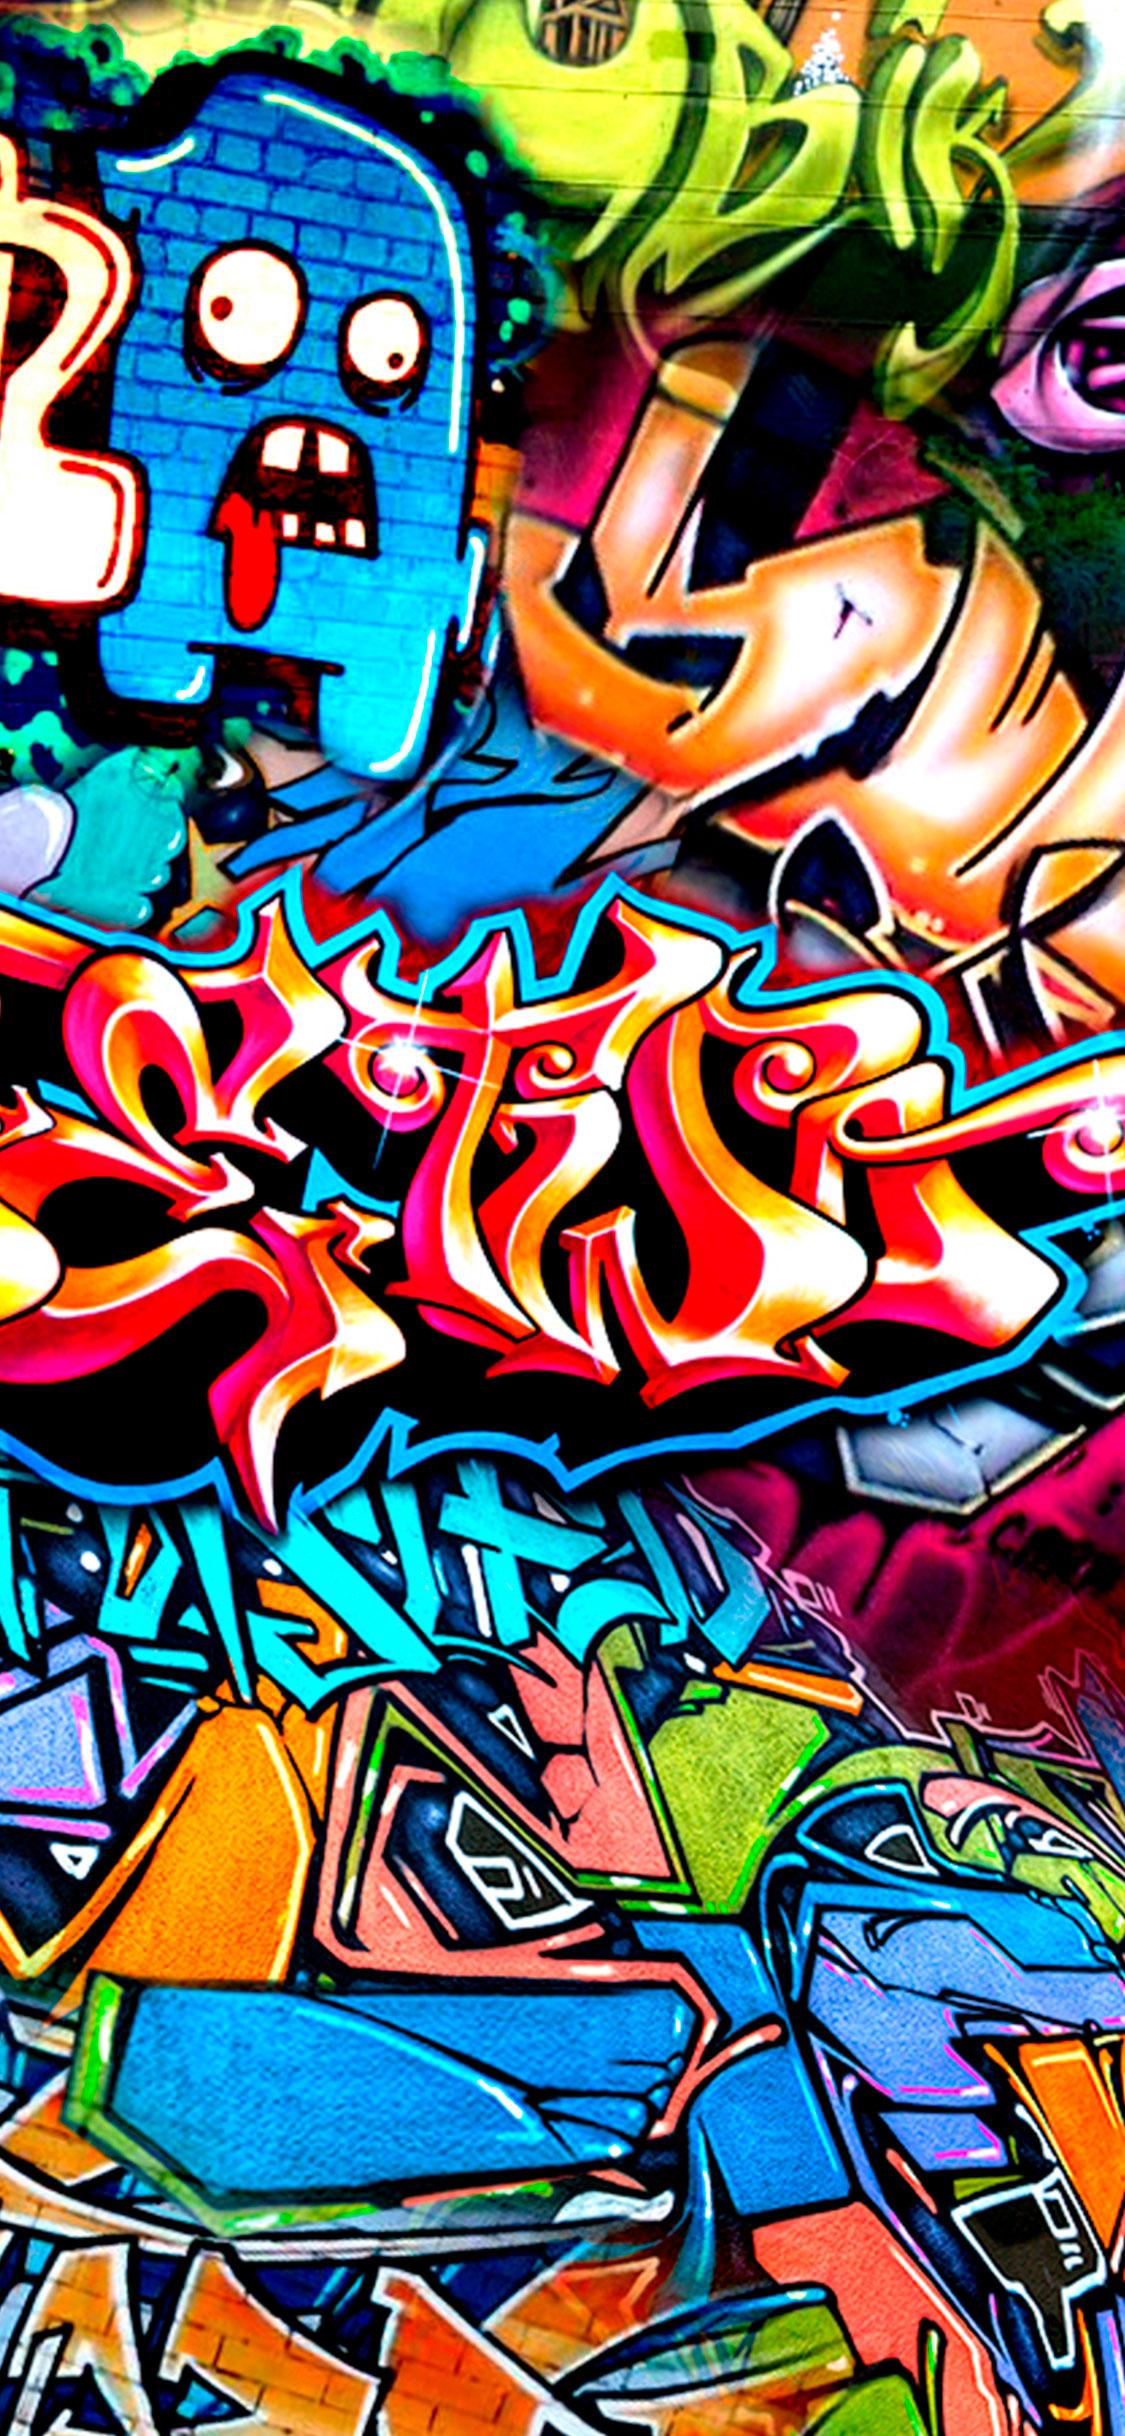 IPhone 6 wallpaper Graffiti 2014 iPhone 6 wallpaper Graffiti 2014 640x1136 - Graffiti